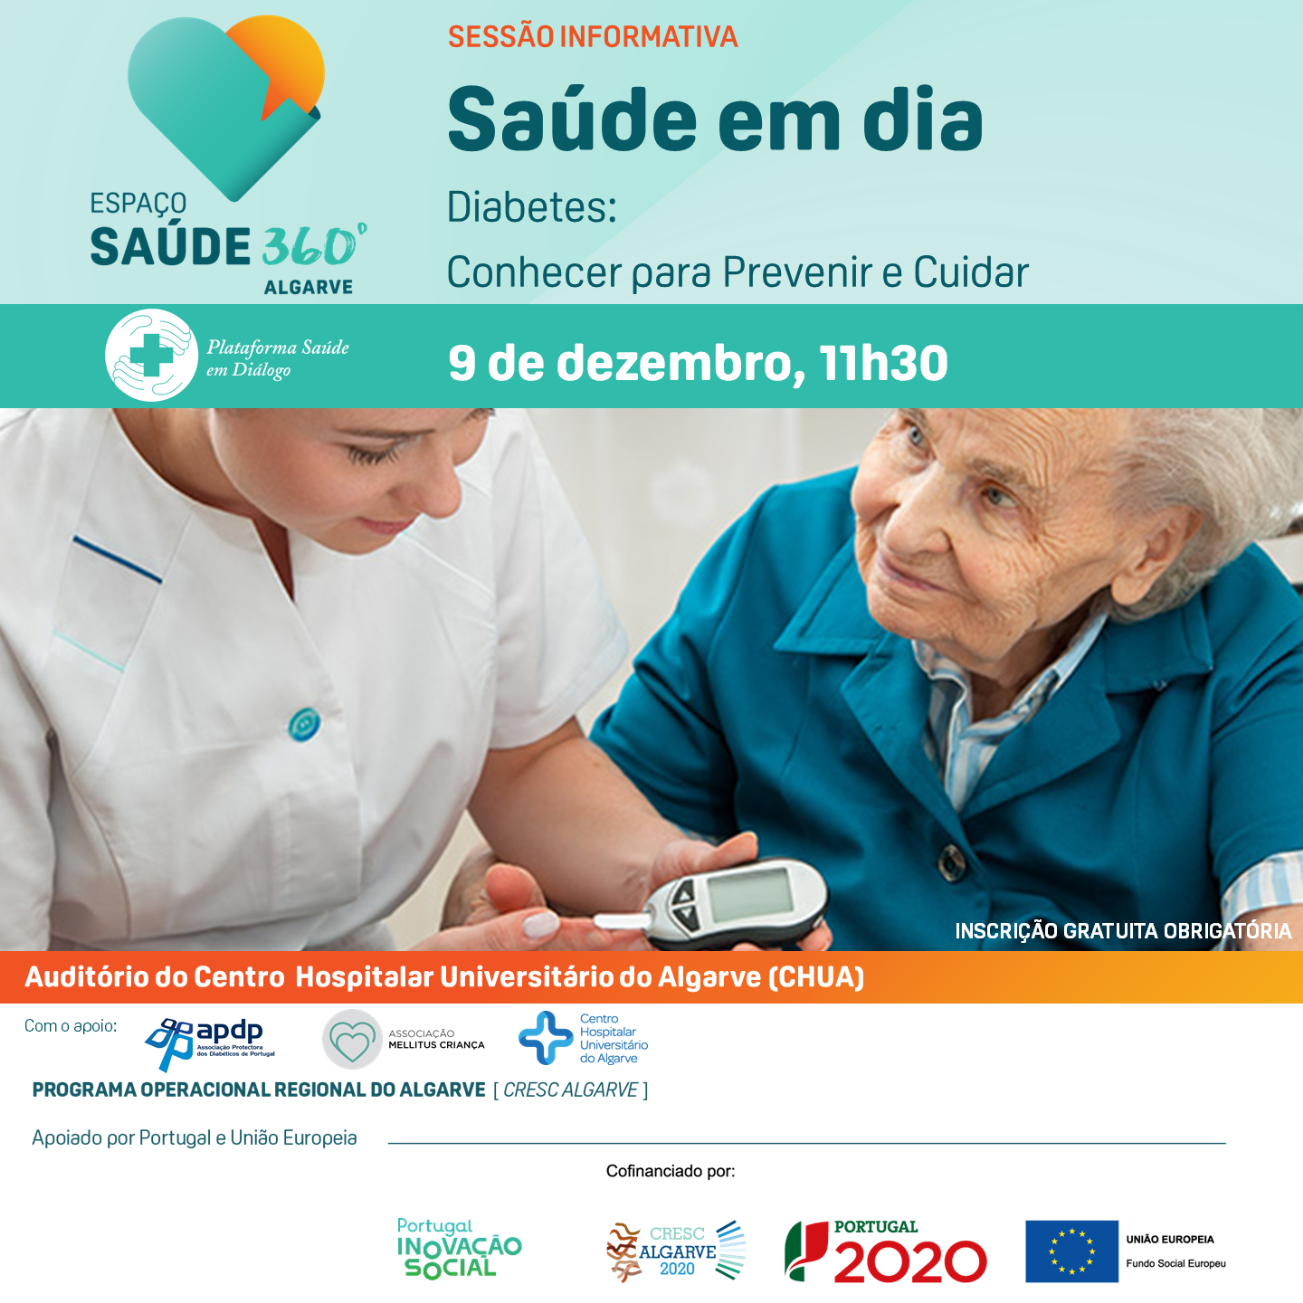 Espaço Saúde 360º Algarve dinamiza sessão informativa sobre a Diabetes